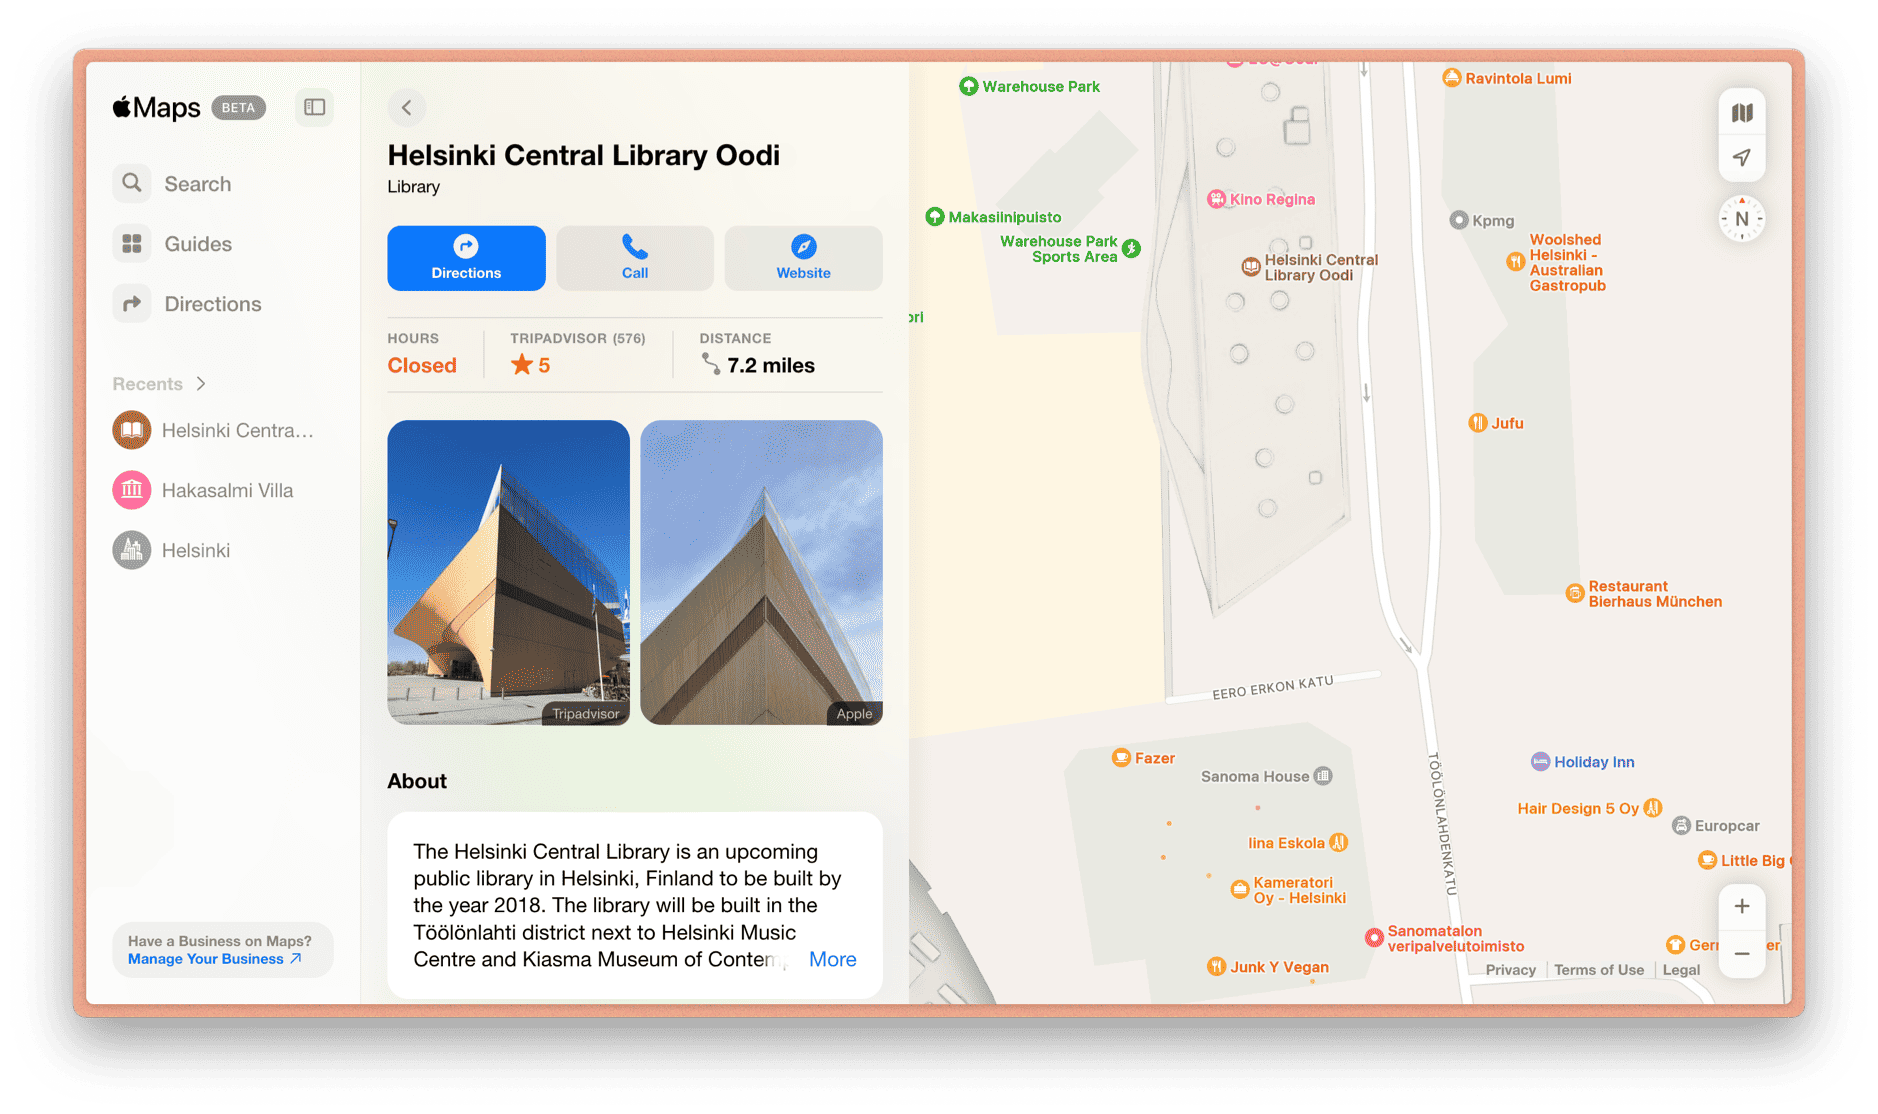 Das Bild zeigt einen Screenshot von Apple Maps mit Informationen über die Helsinki Central Library Oodi. Die Bibliothek wird als eine im Jahr 2018 eröffnete öffentliche Bibliothek in Helsinki beschrieben und befindet sich im Töölönlahti-Viertel neben dem Helsinki Music Centre und dem Kiasma Museum.